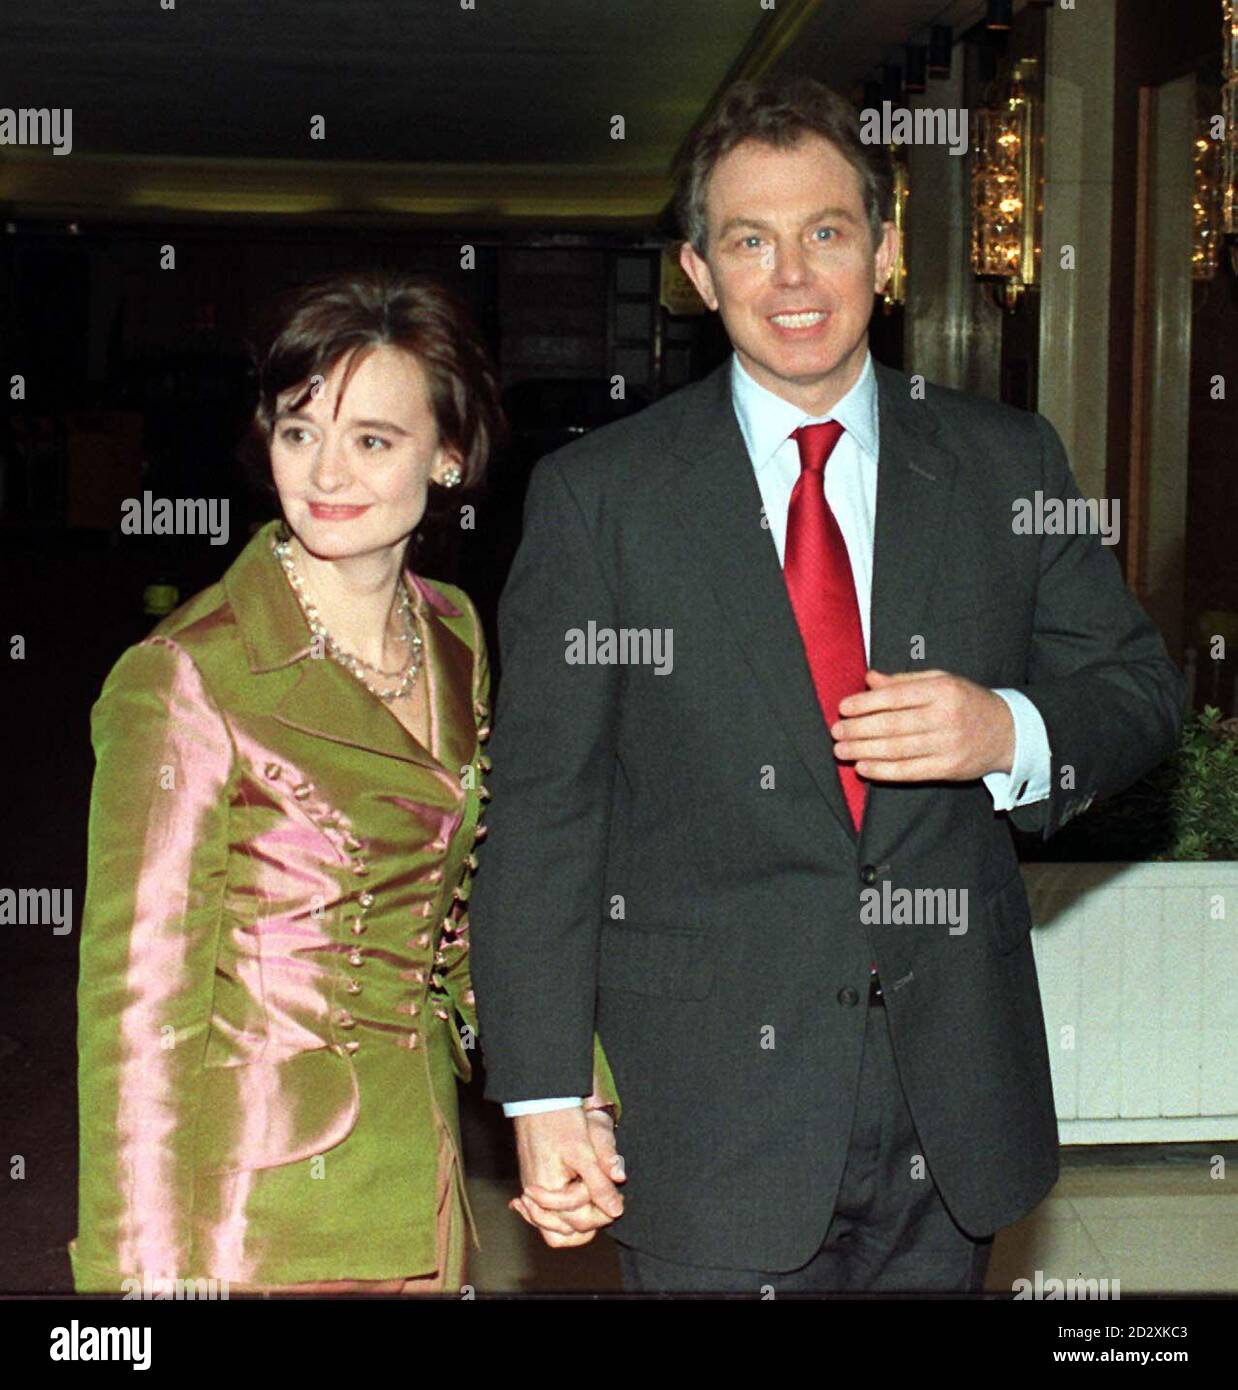 Der Vorsitzende der Labour Party Tony Blair, begleitet von seiner Frau Cherie, kam heute Abend (Mittwoch) beim 5. Gala-Spendendinner der Labour Party im Londoner Hilton in der Park Lane an. Stockfoto